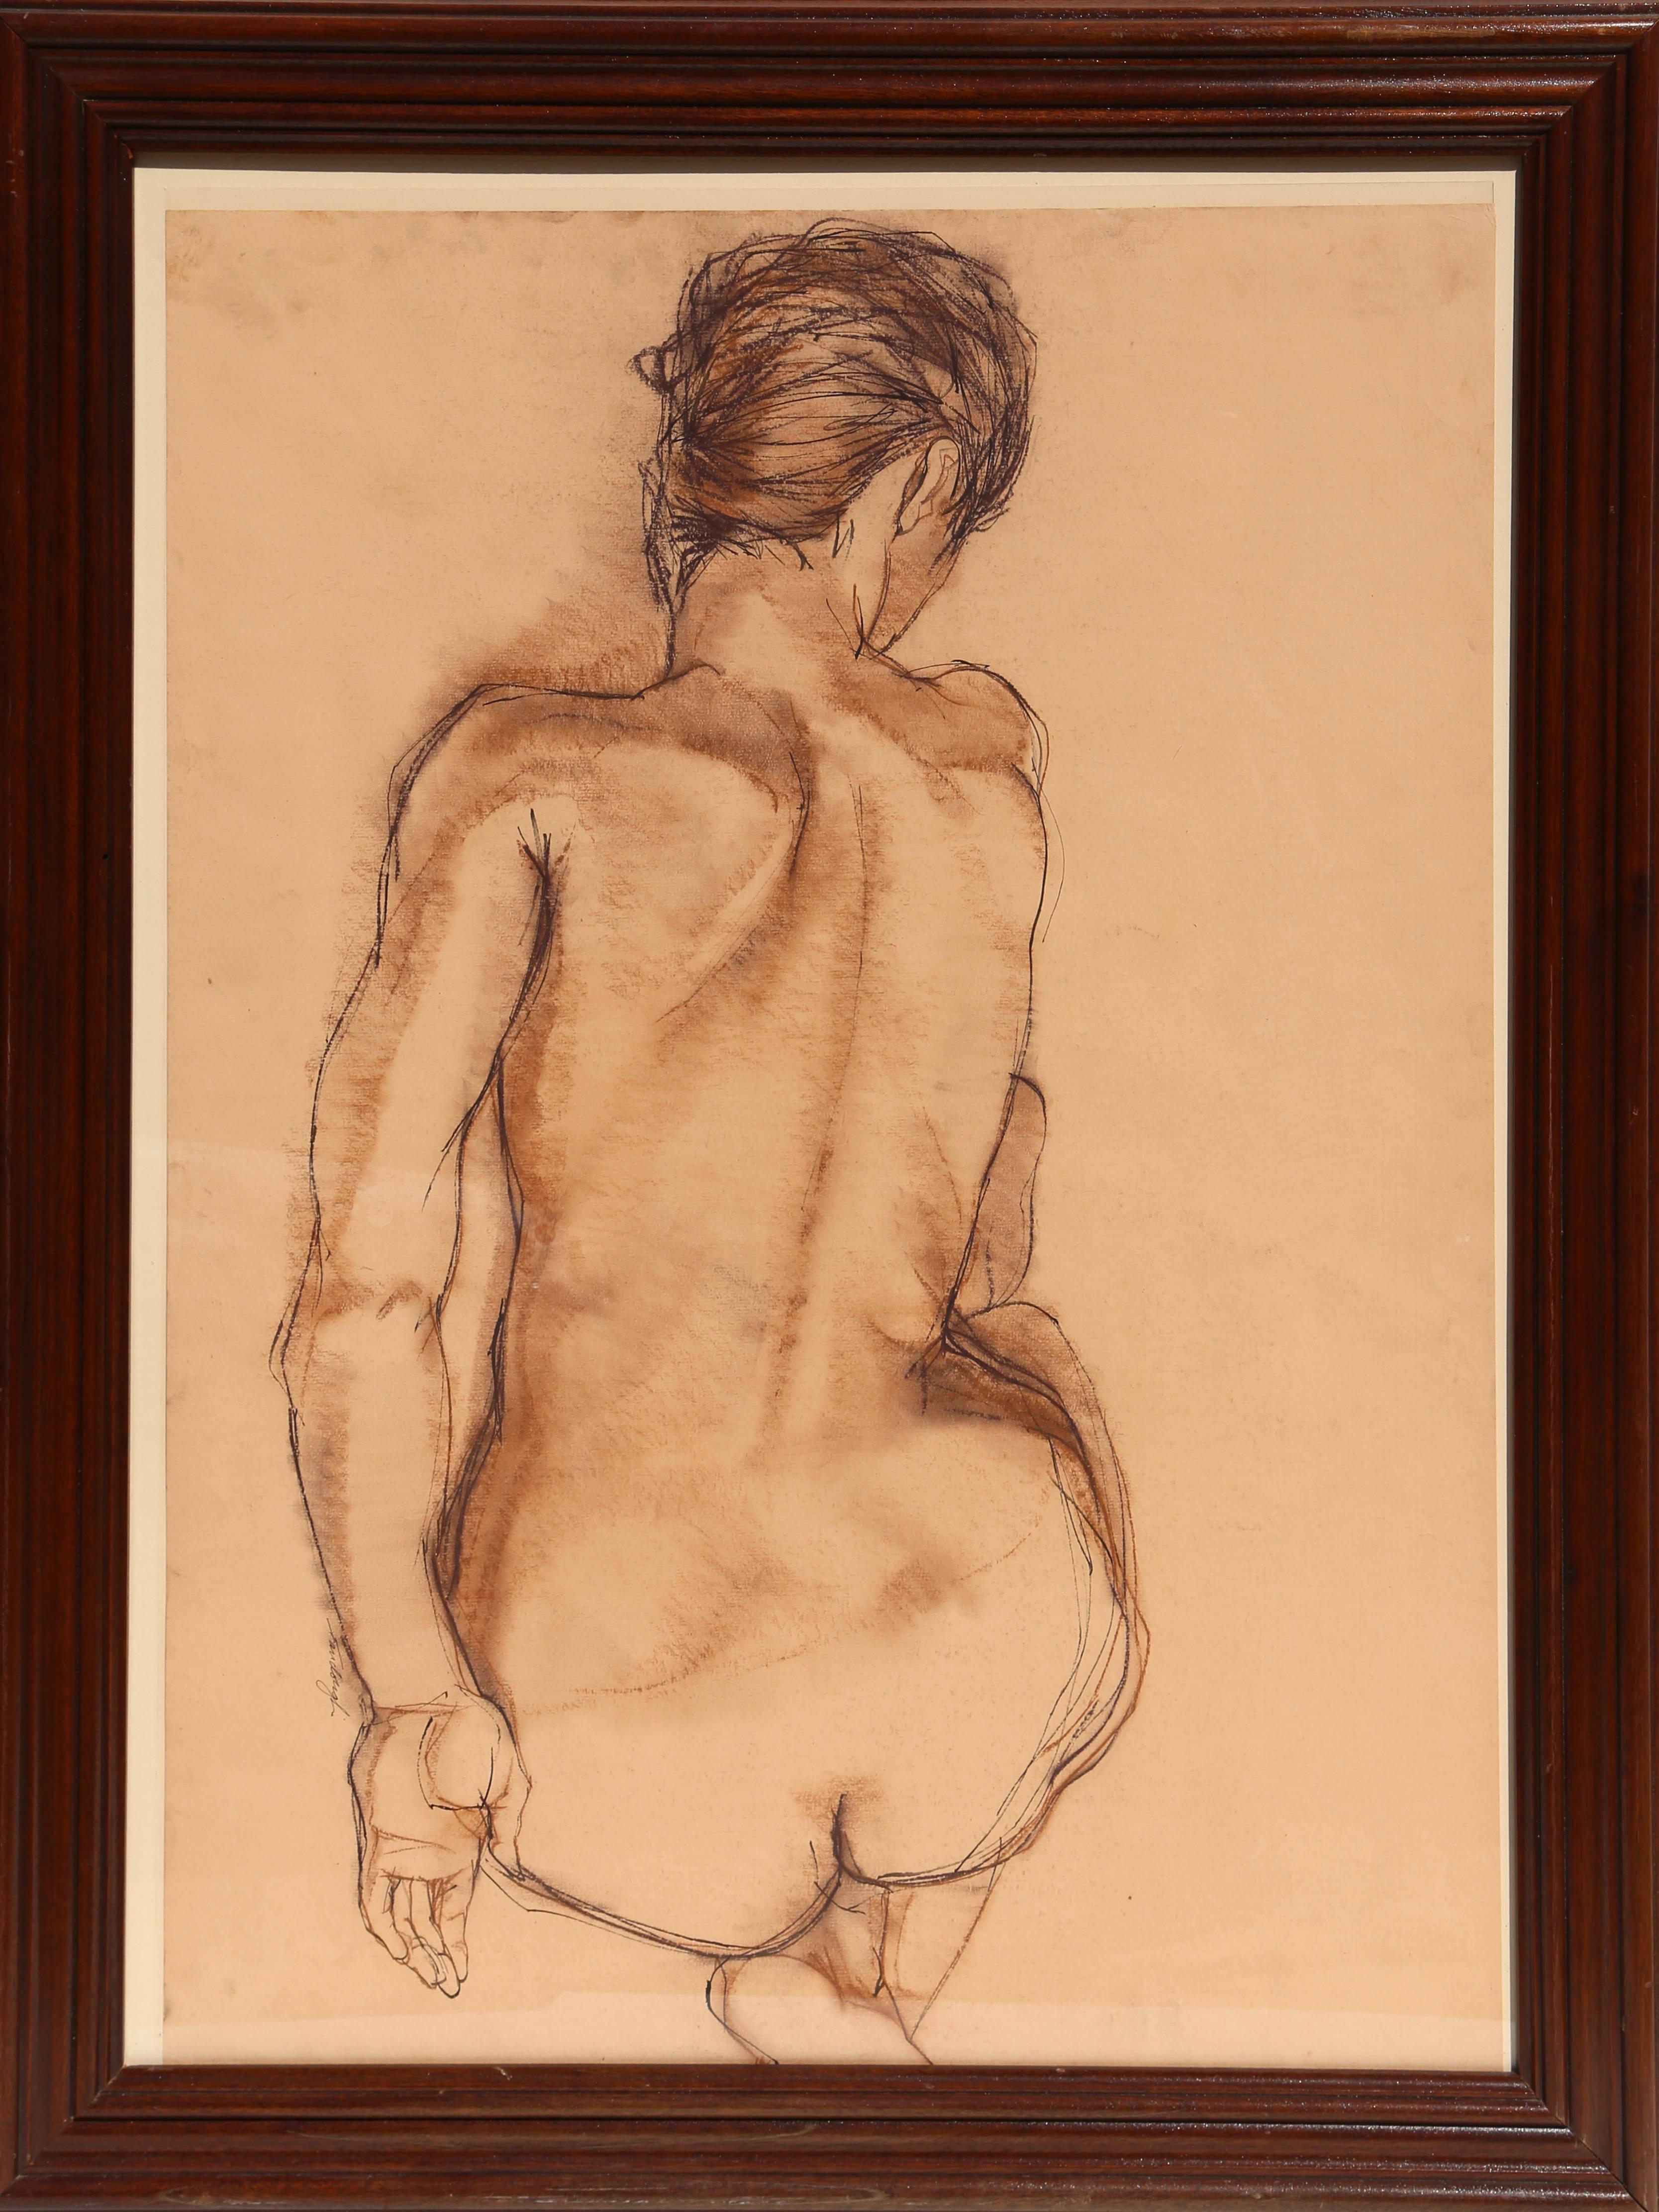 Künstler: Gerald Fairclough
Titel: Nackt
Jahr: ca. 1977
Medium: Pastell-Zeichnung, signiert
Größe: 36 x 26 in. (91,44 x 66,04 cm)
Rahmengröße: 43 x 33 Zoll
